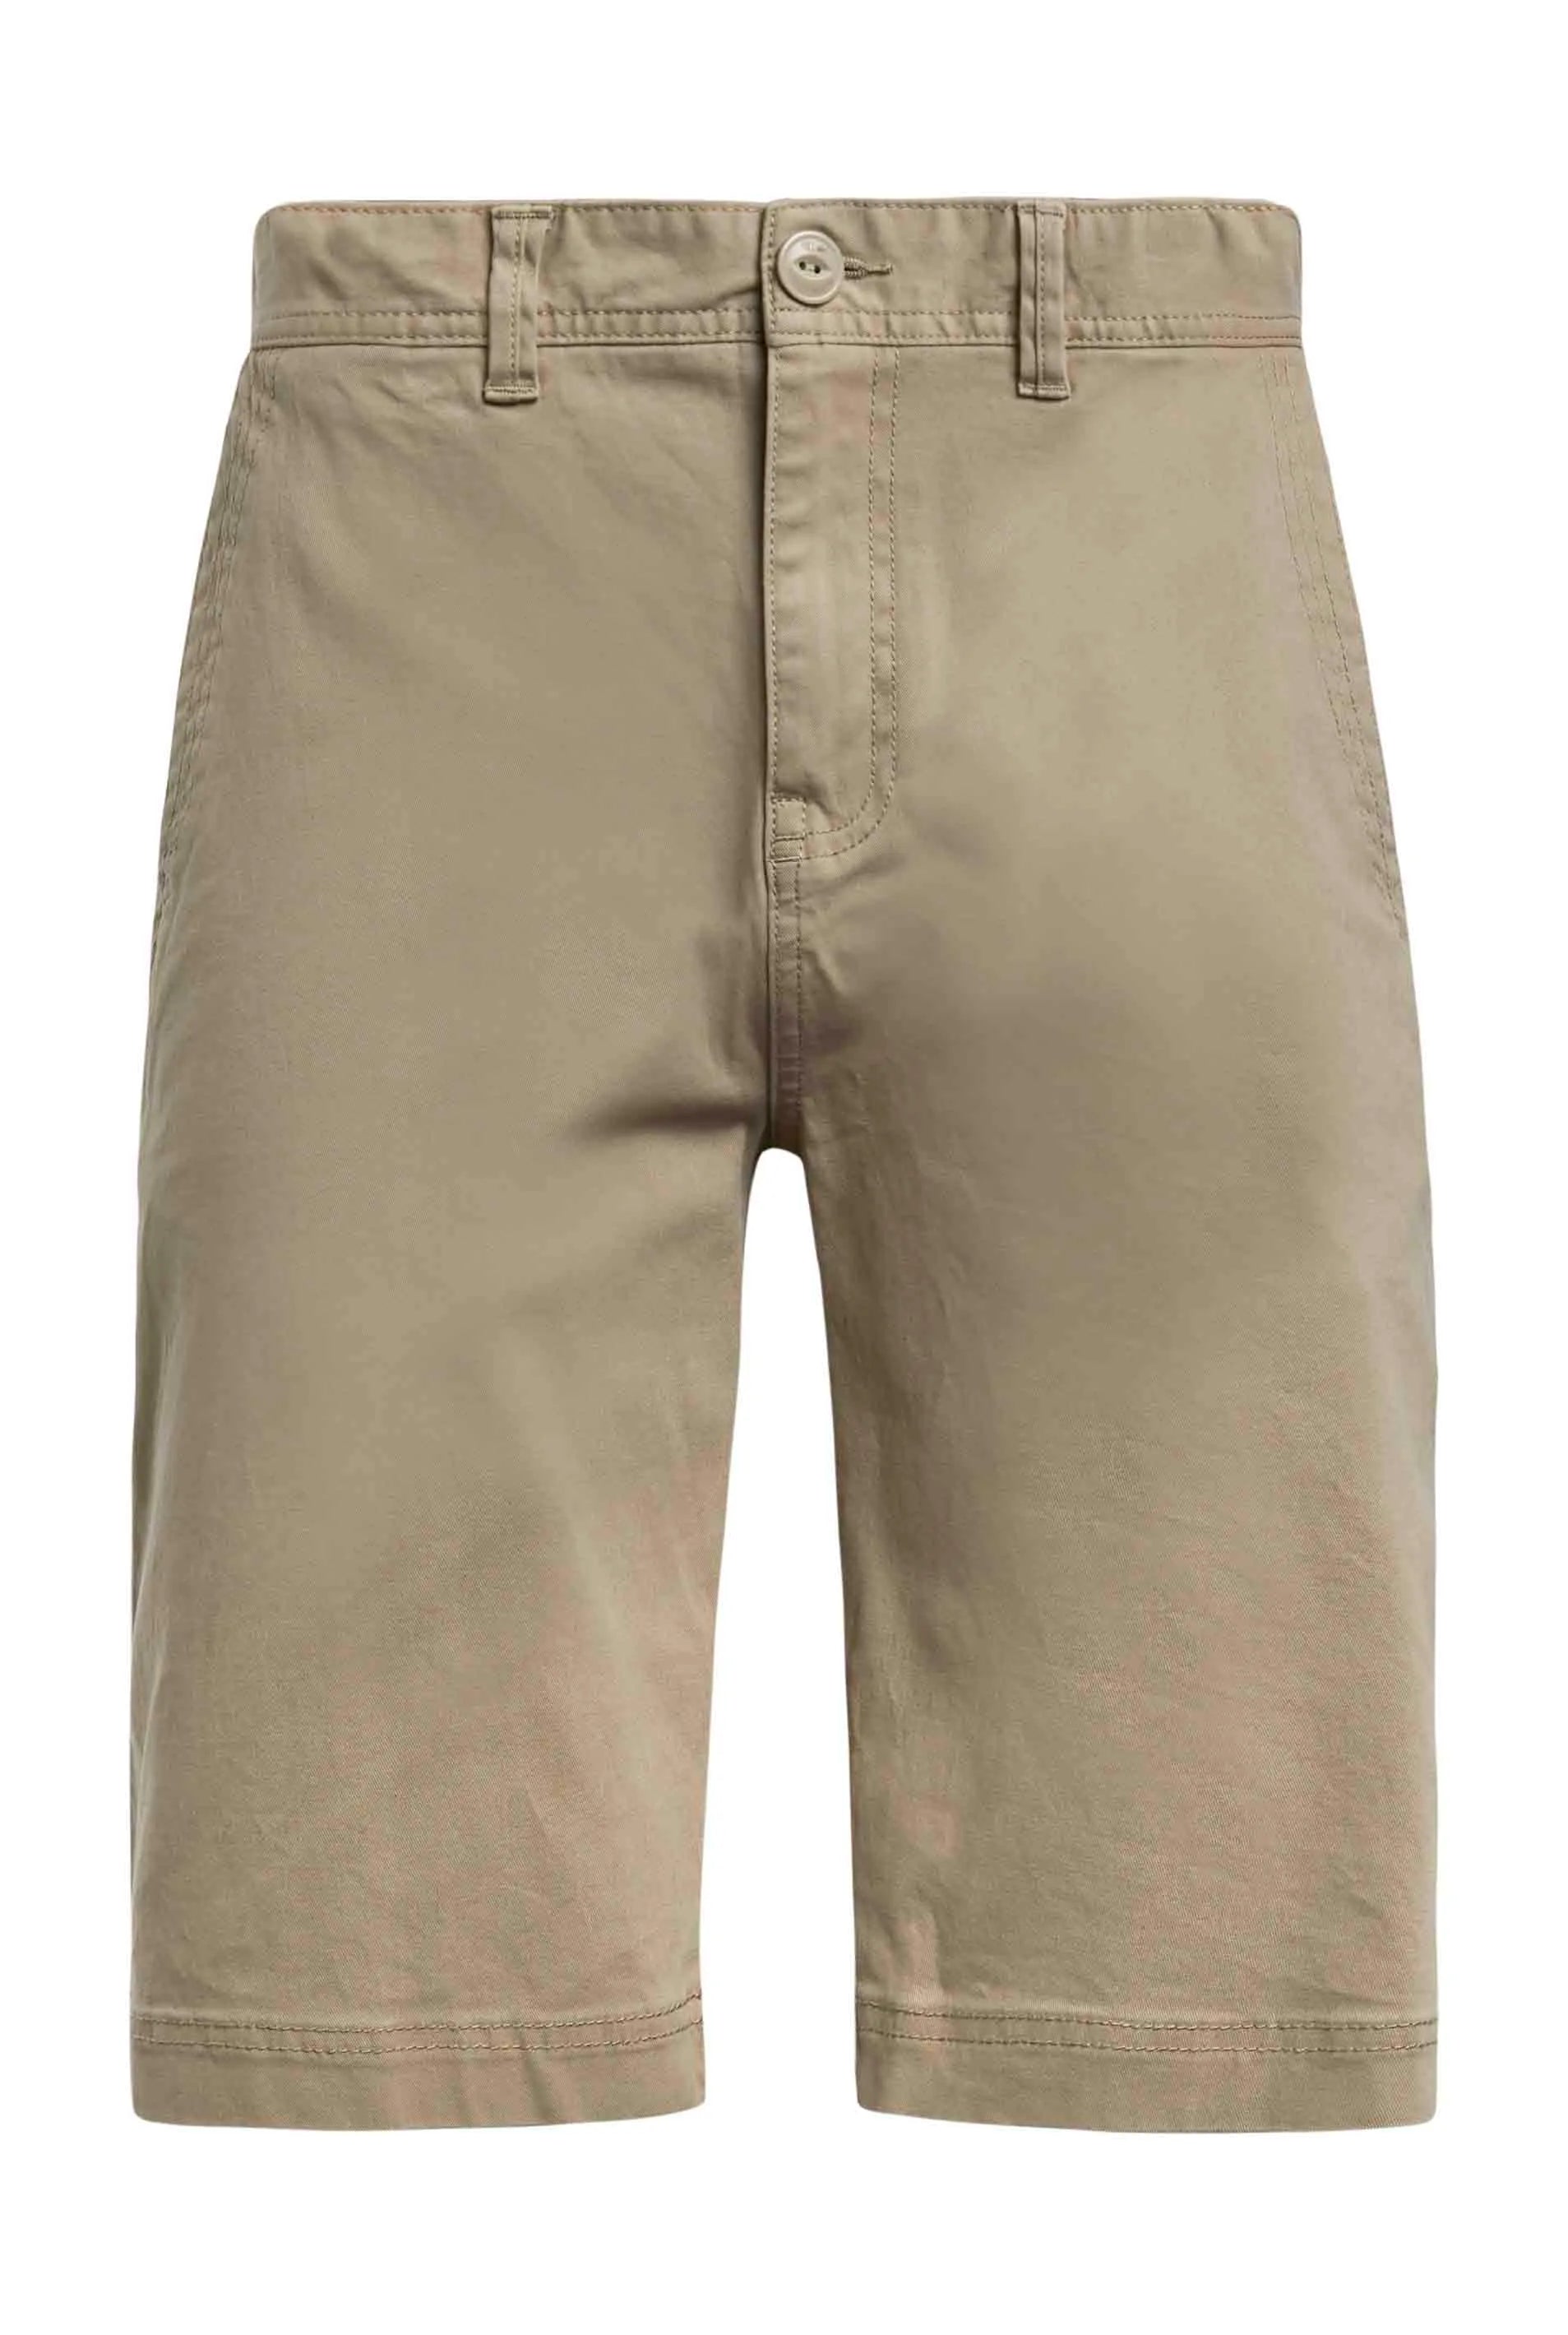 Weirdfish Rayburn Flat Front Shorts